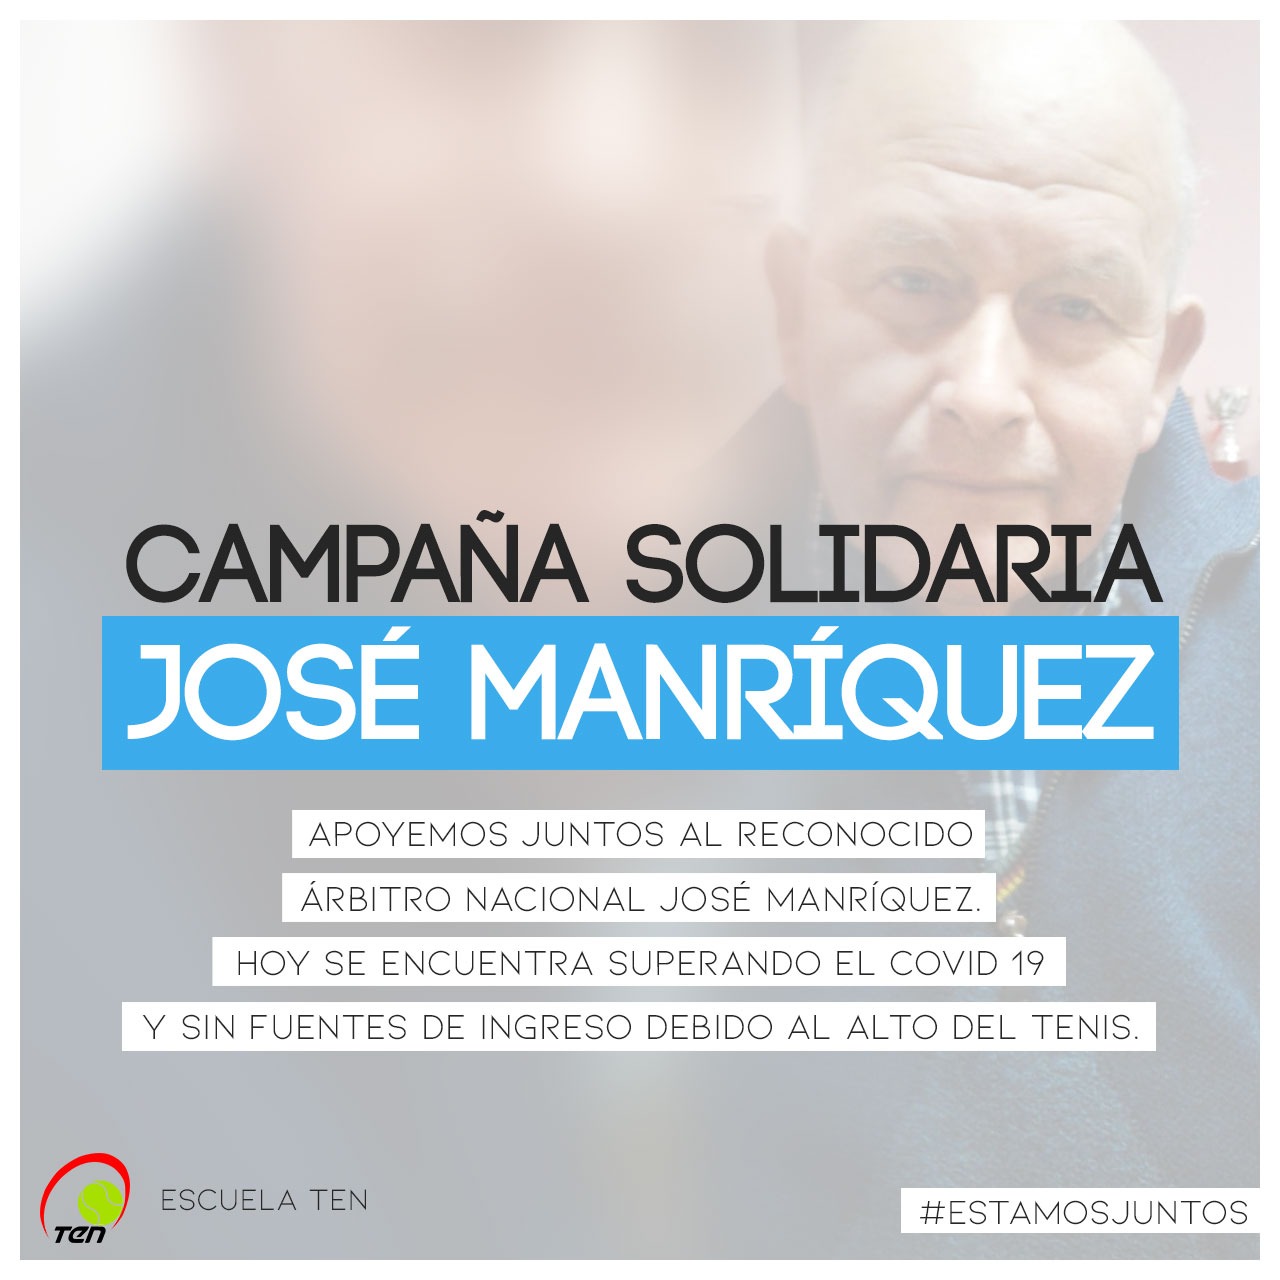 Campaña solidaria José Manríquez